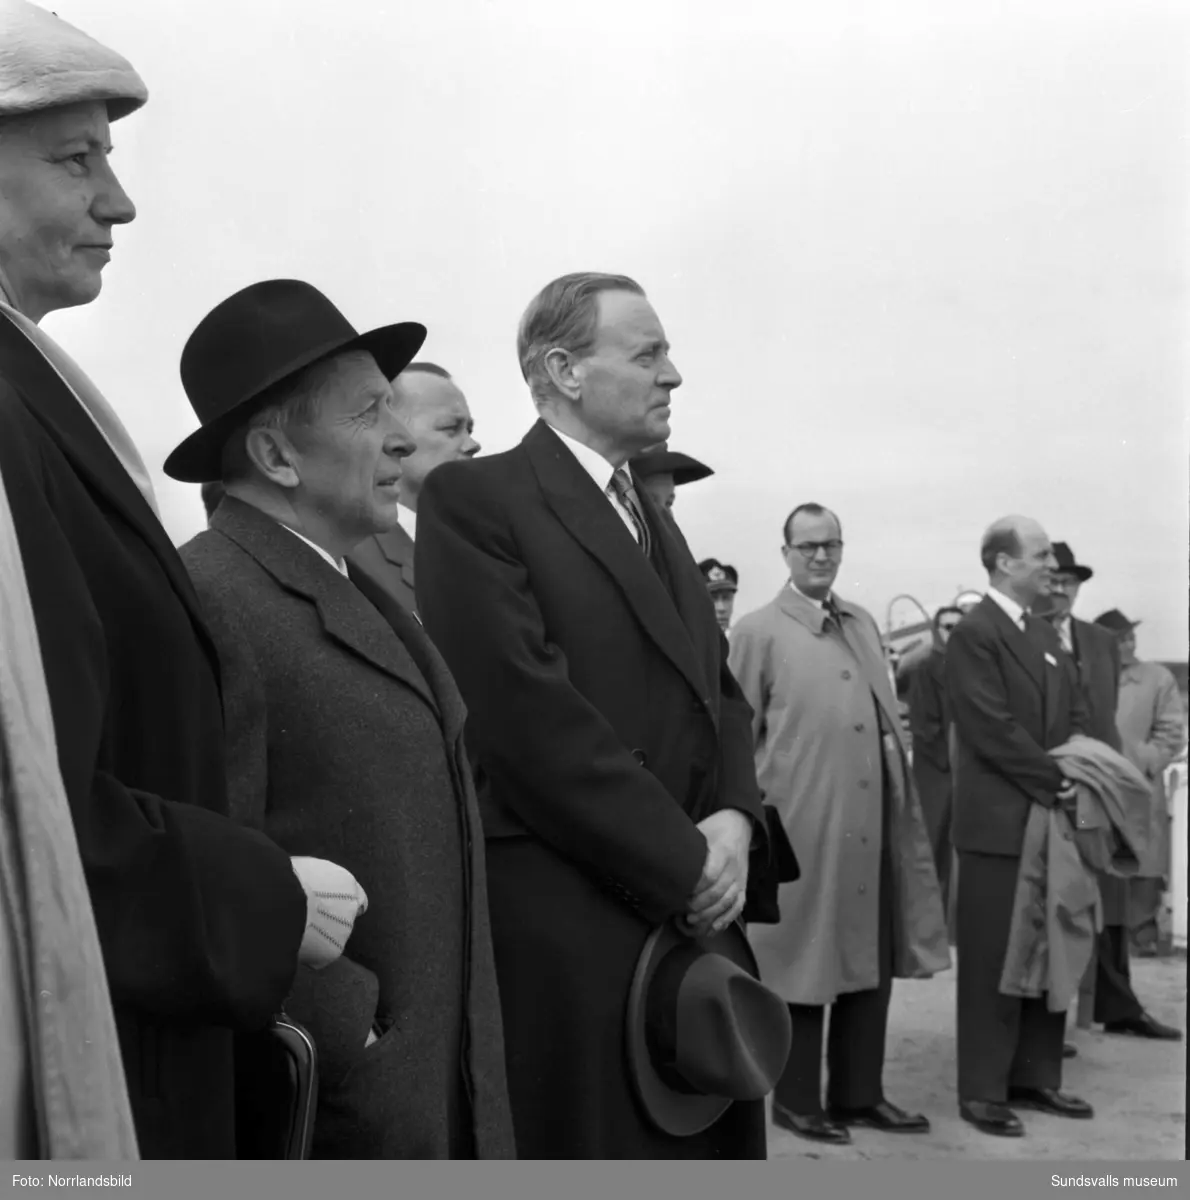 Premiär för Linjeflyg på Midlanda flygplats 1957. Pampig invigning med tal av såväl kommunikationsminister Gösta Skoglund som Linjeflygs direktör Sven Östling inför ett par hundra åskådare. Då var man fortfarande tvungen att åka färja ut till ön, bron kom i slutet av 1959.